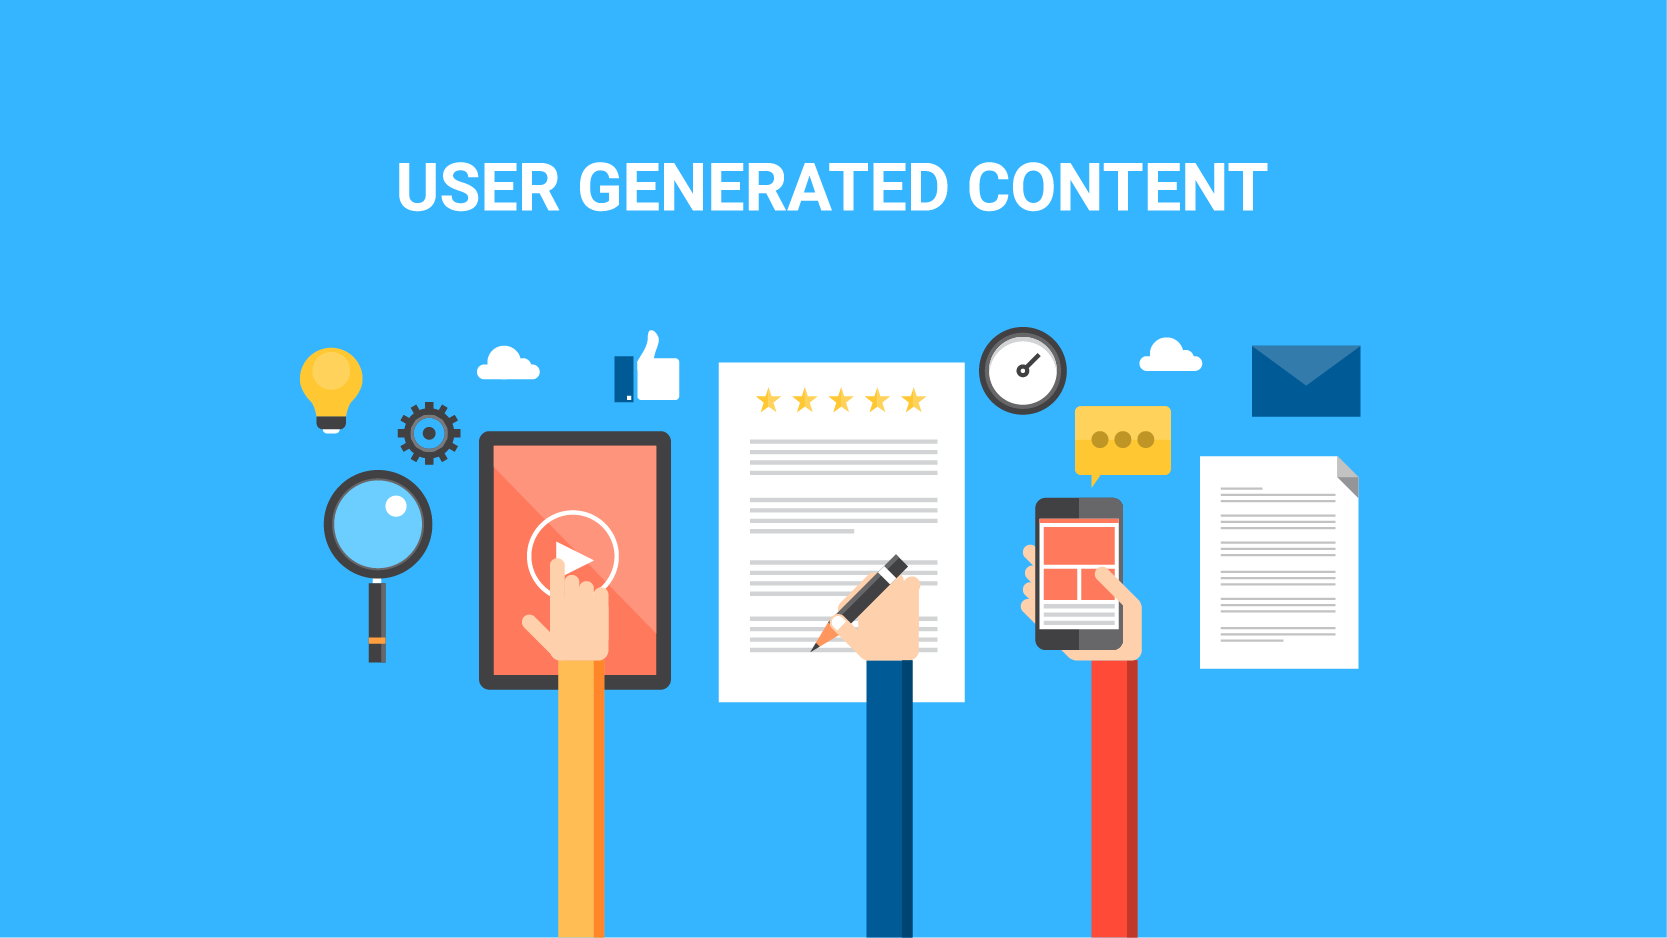 Leveraging user-generated content